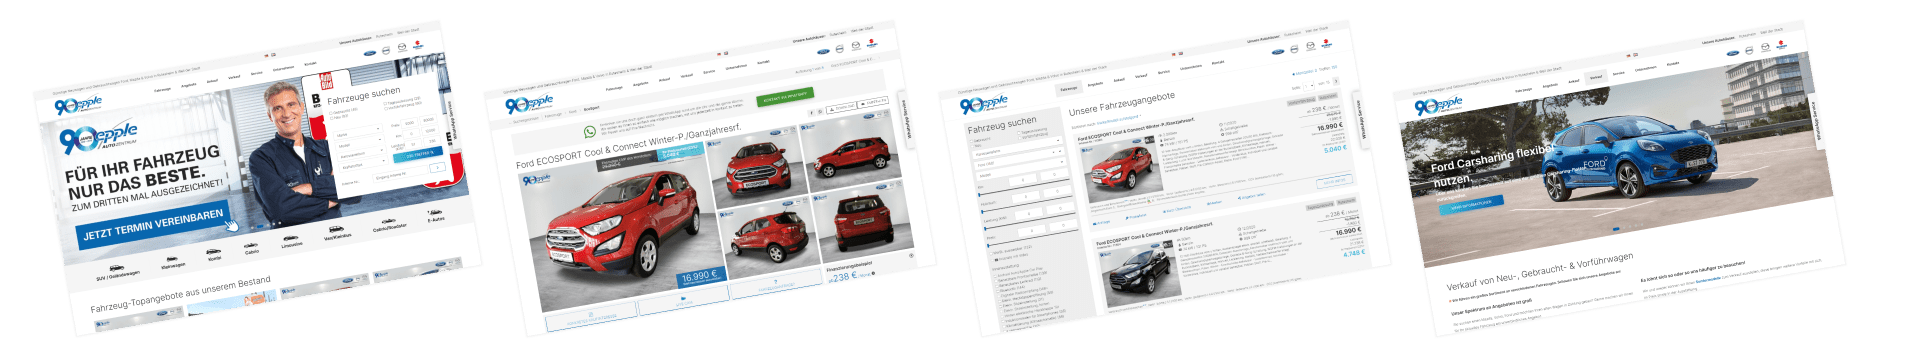 Autohaus Website Design für Autohaus Epple - Symfio Homepage für Ford-Händler